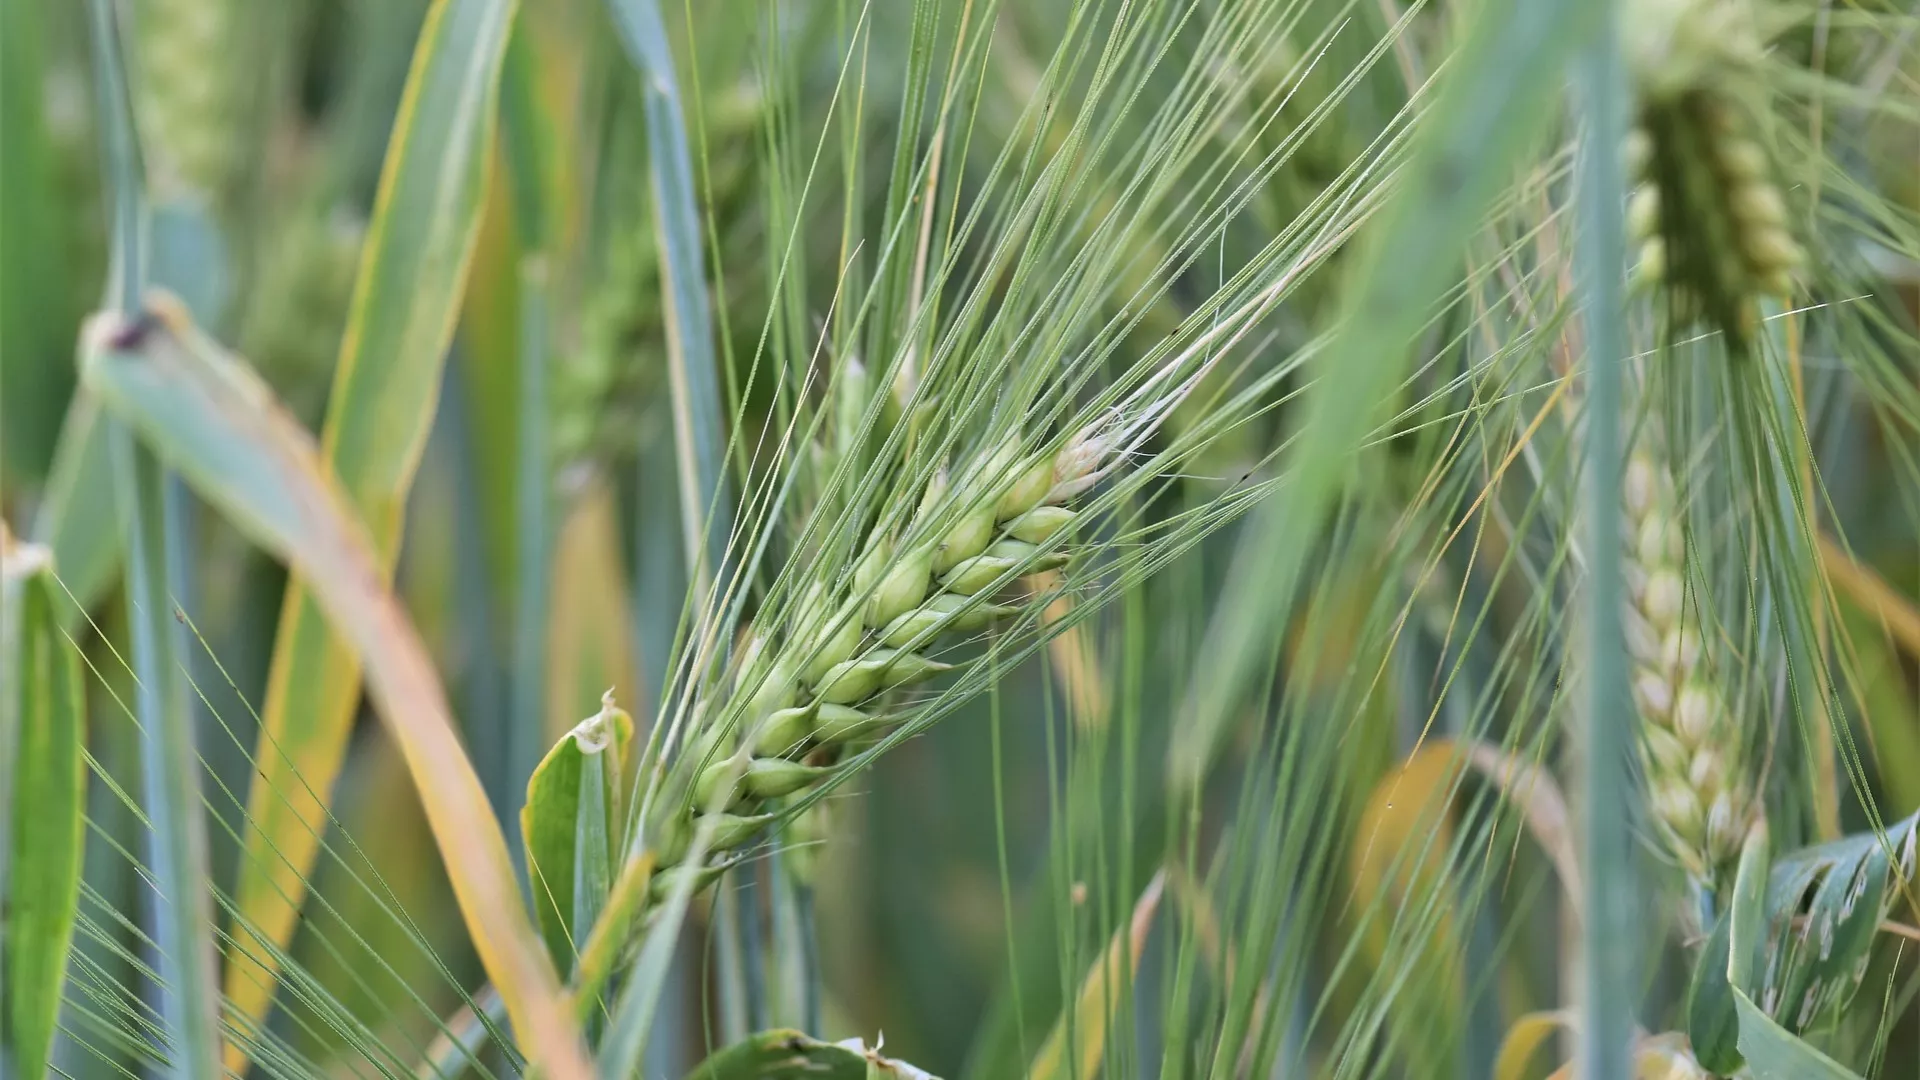 Seasonal funding for purchase of grain harvester